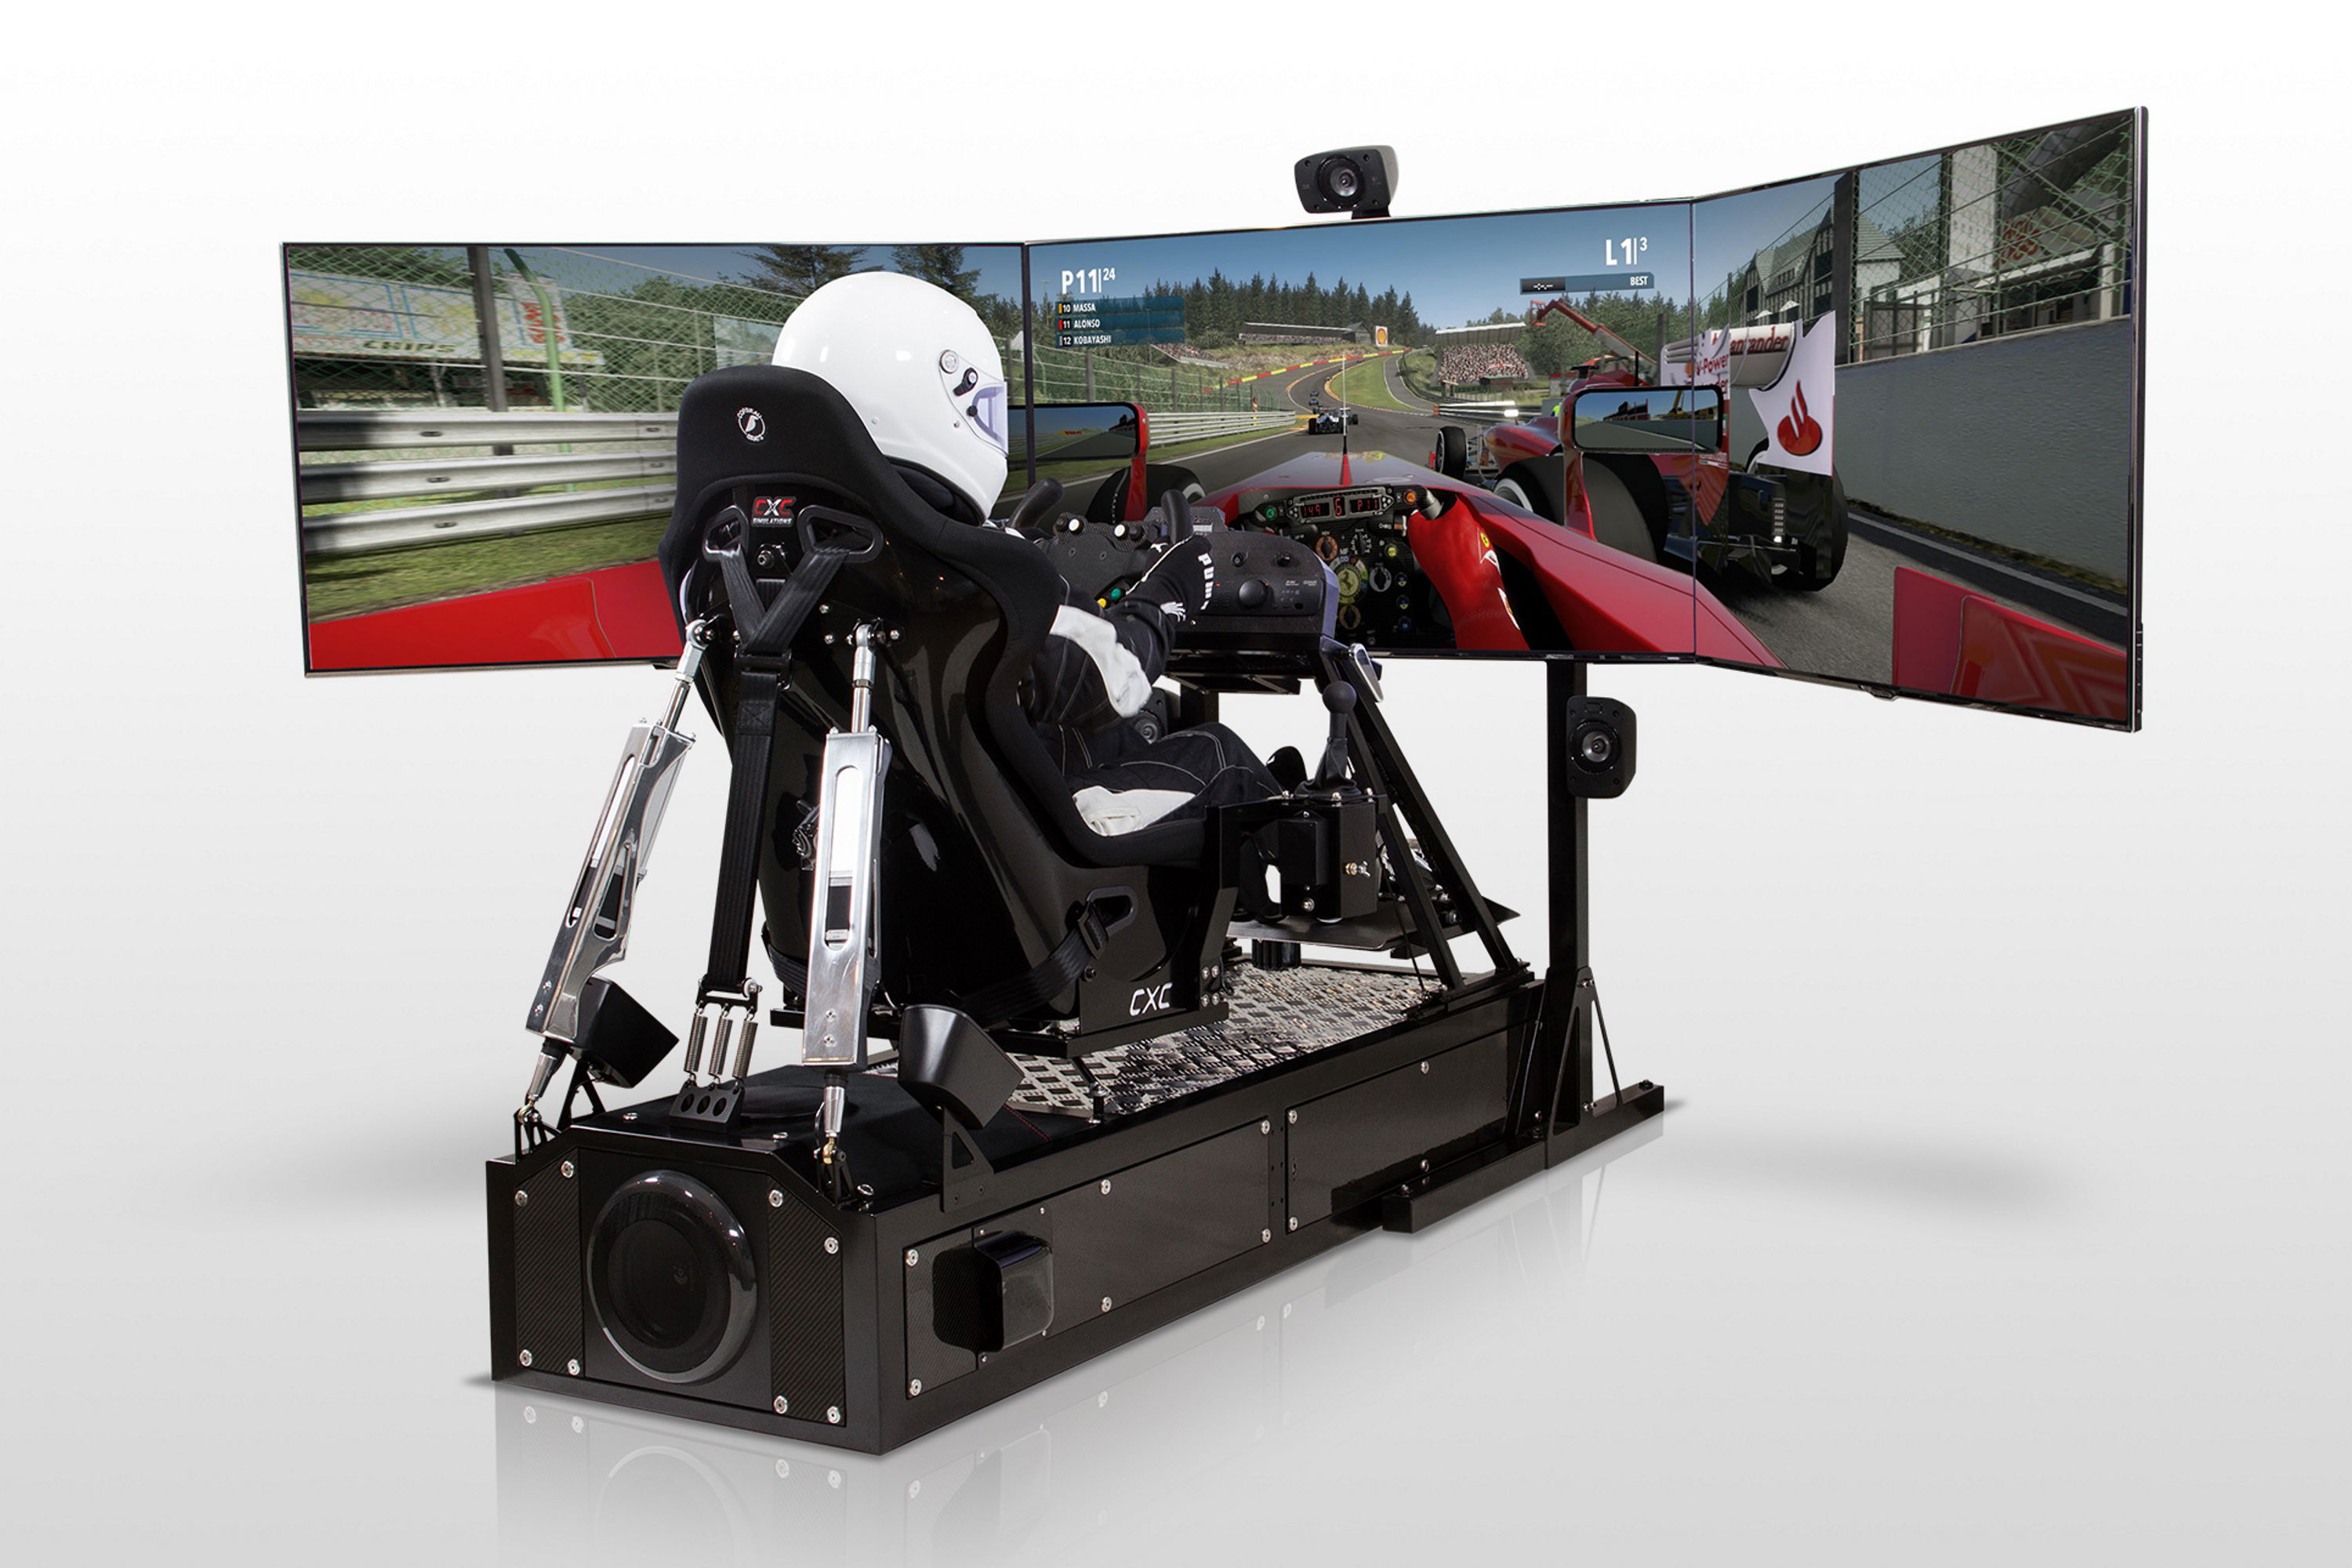 driving play game seat racing simulator